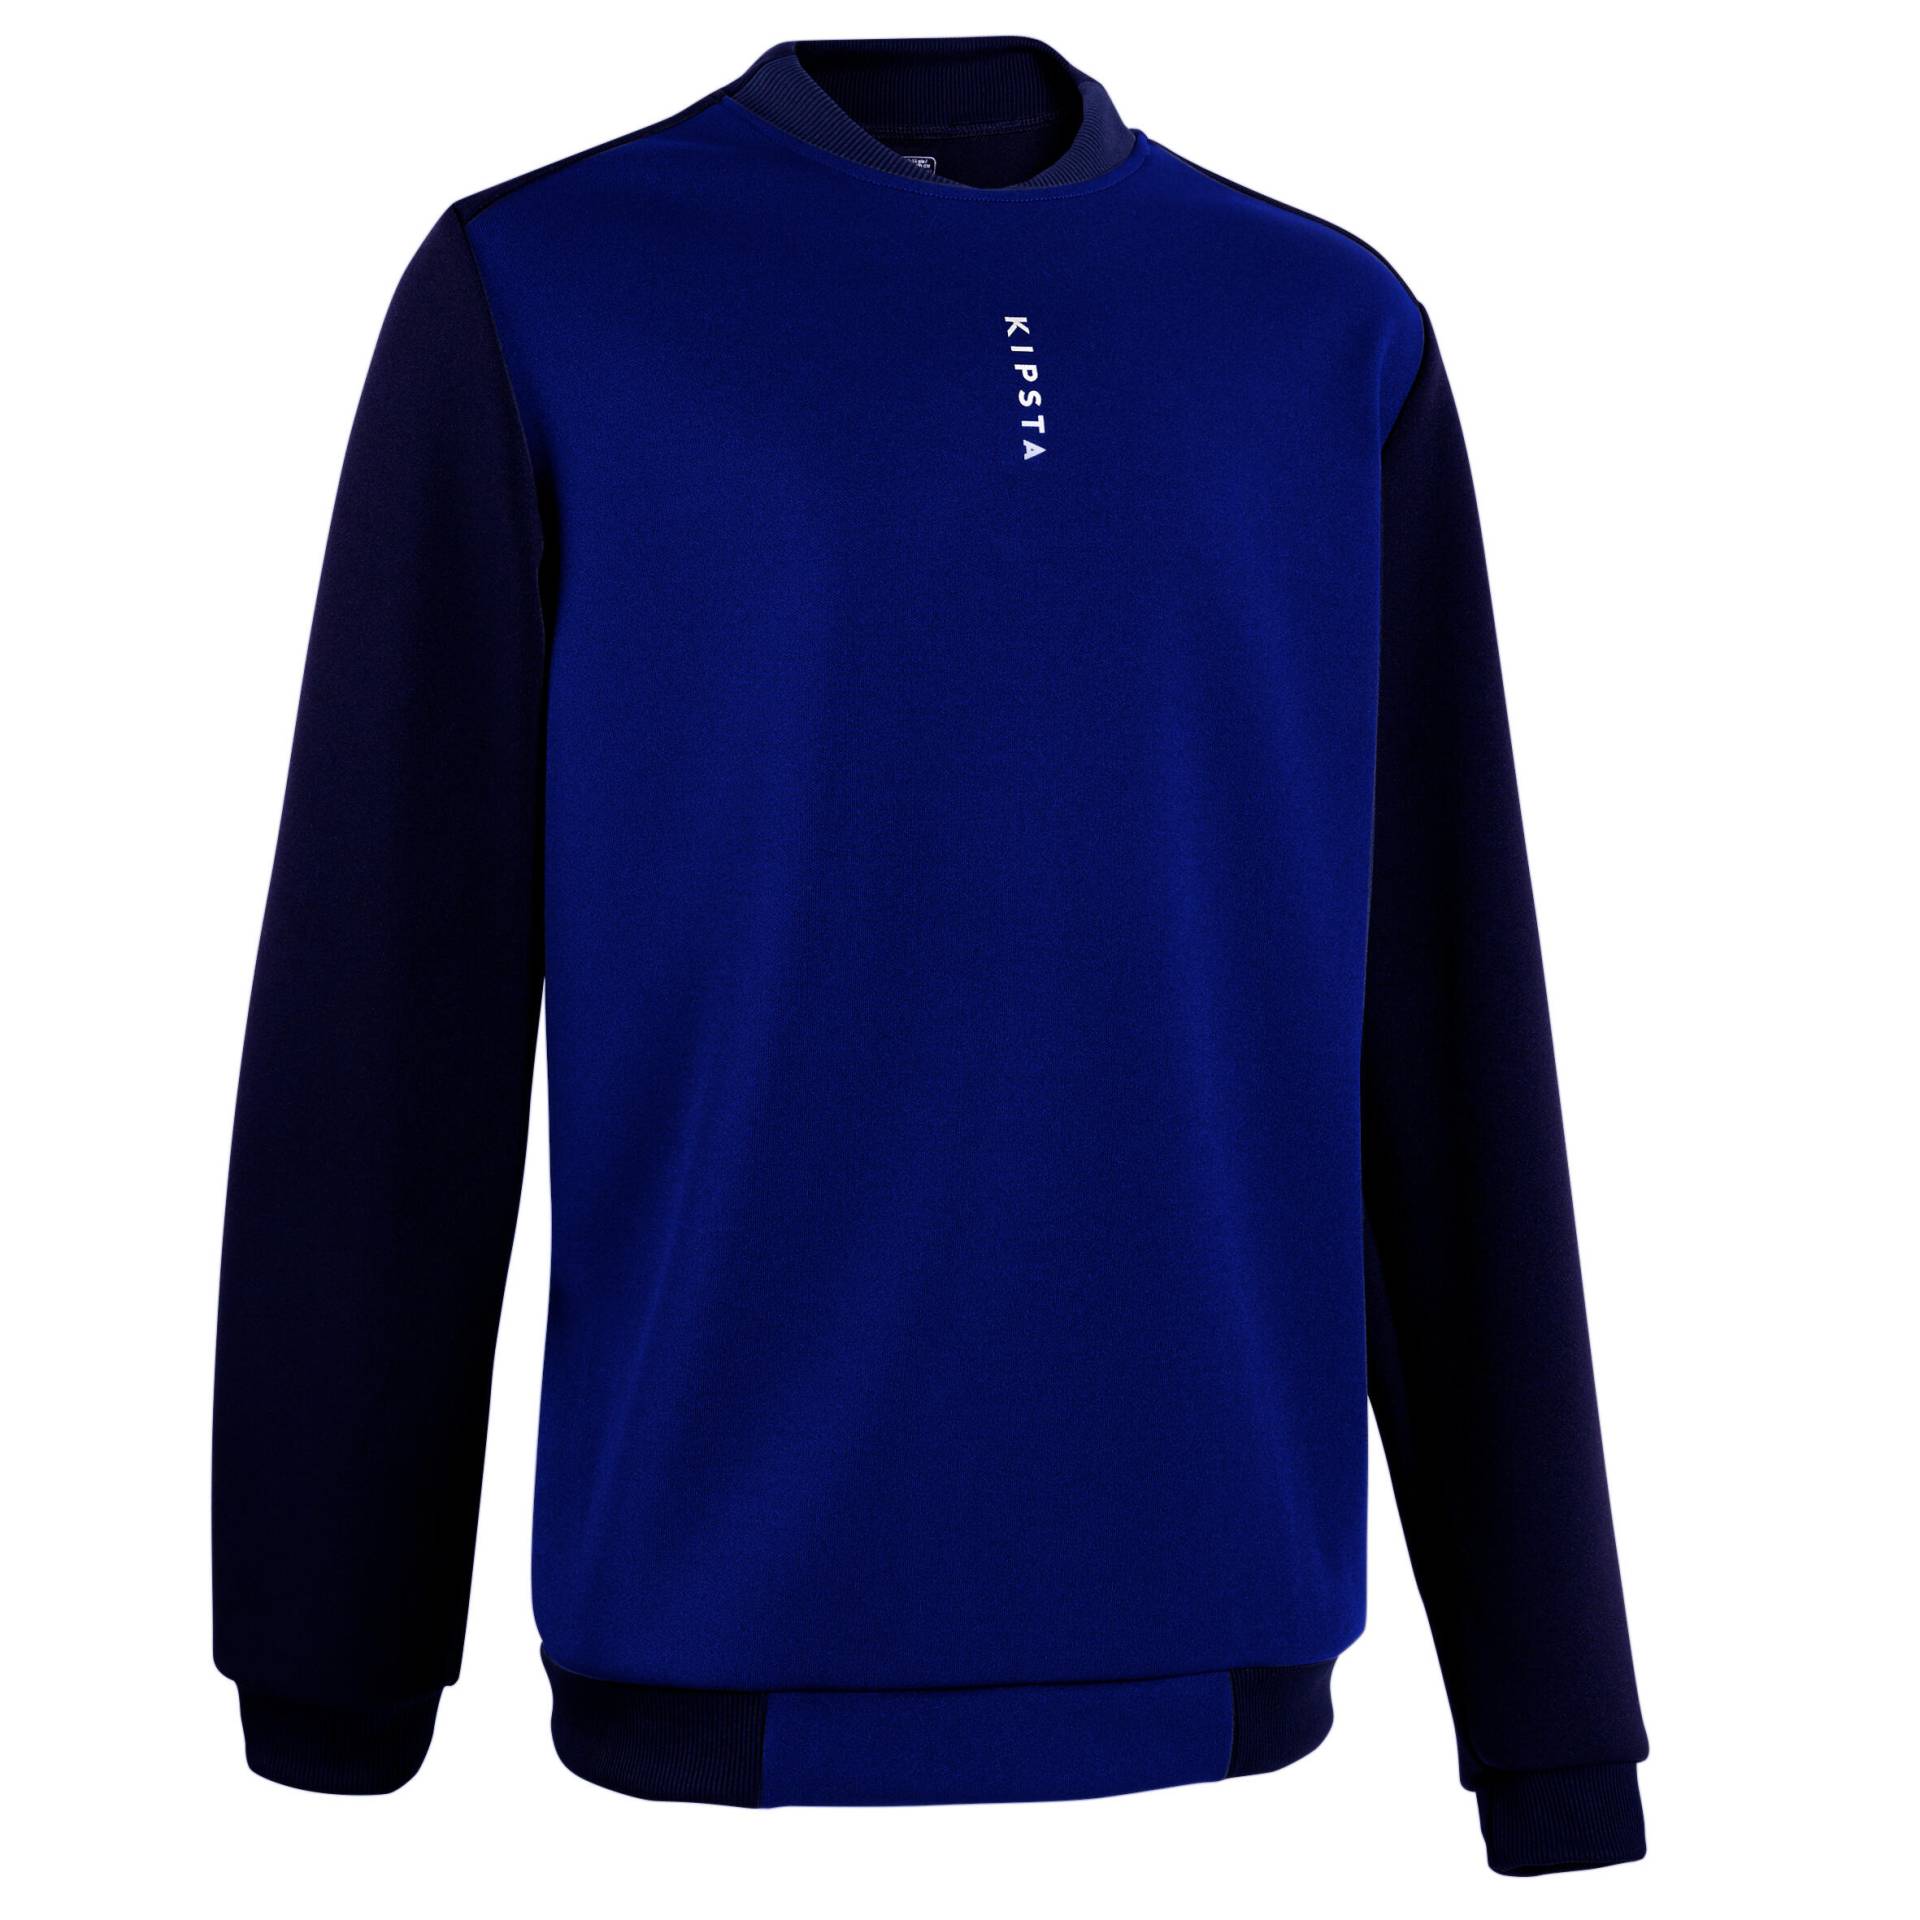 Kinder Fussball Sweatshirt - Essentiel Verein blau/marineblau von KIPSTA